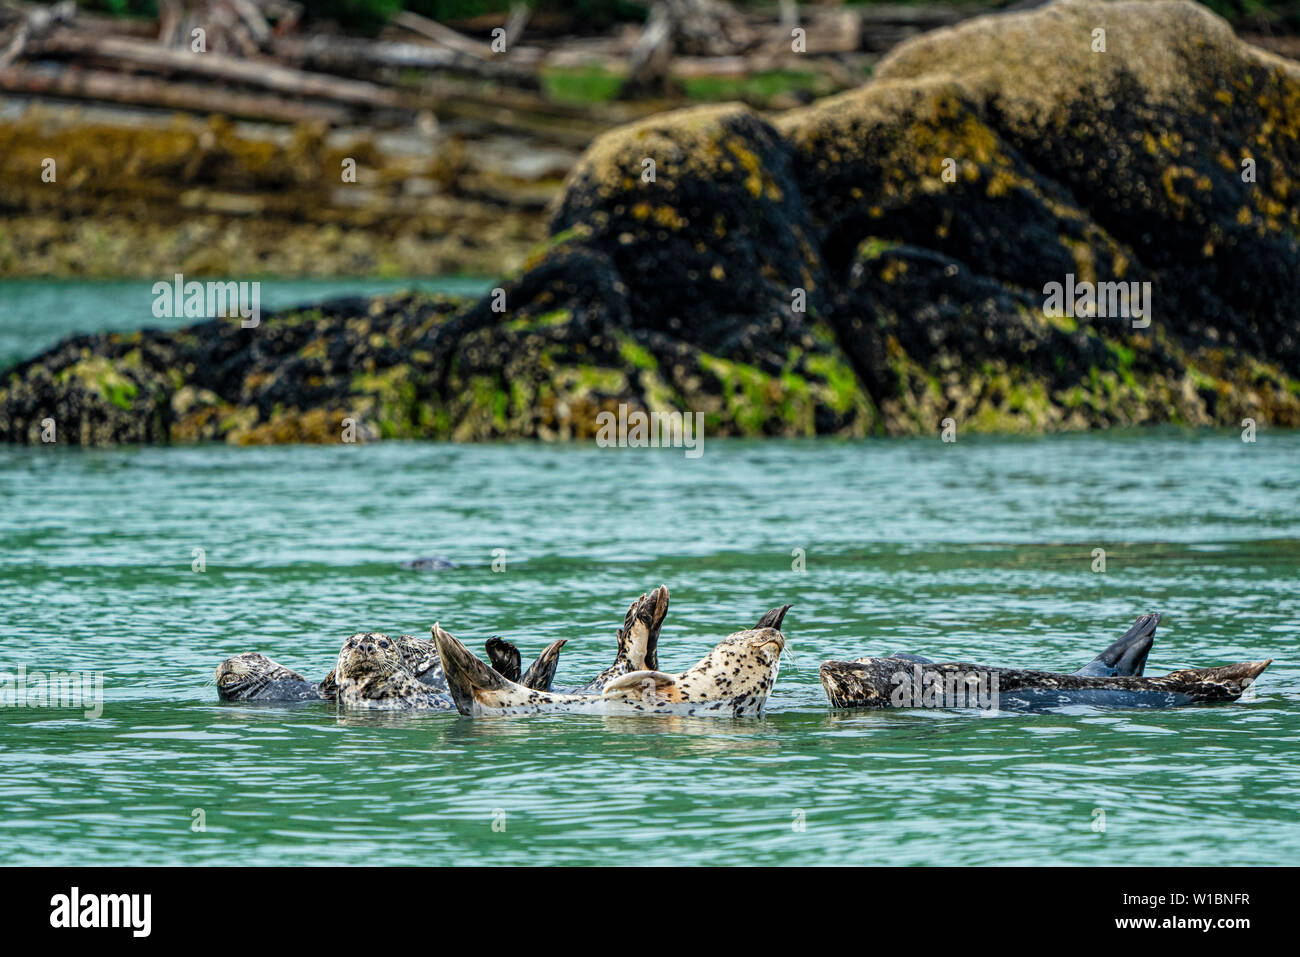 Le phoque commun reposant sur un rocher à marée basse le long de l'Inlet Knight rivage, le territoire des Premières Nations, la forêt pluviale de Great Bear, en Colombie-Britannique, peut Banque D'Images